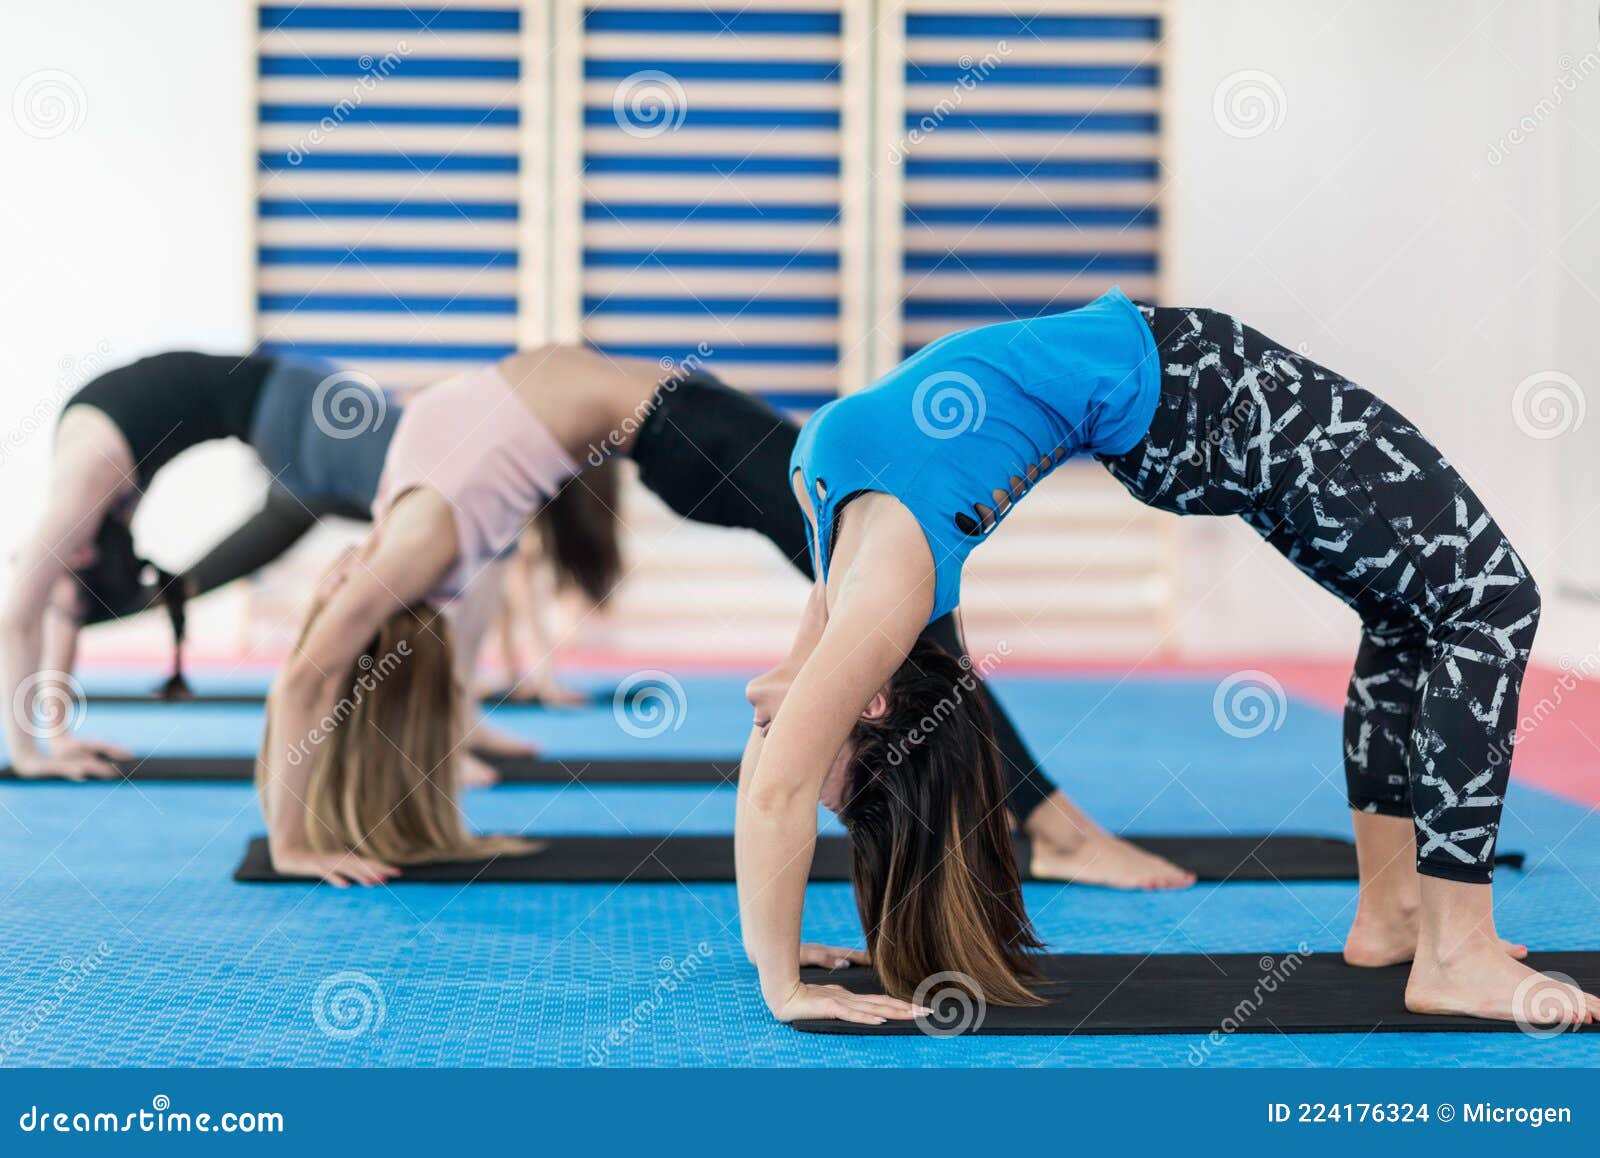 Upward Bow Yoga Position stock photo. Image of club - 224176324